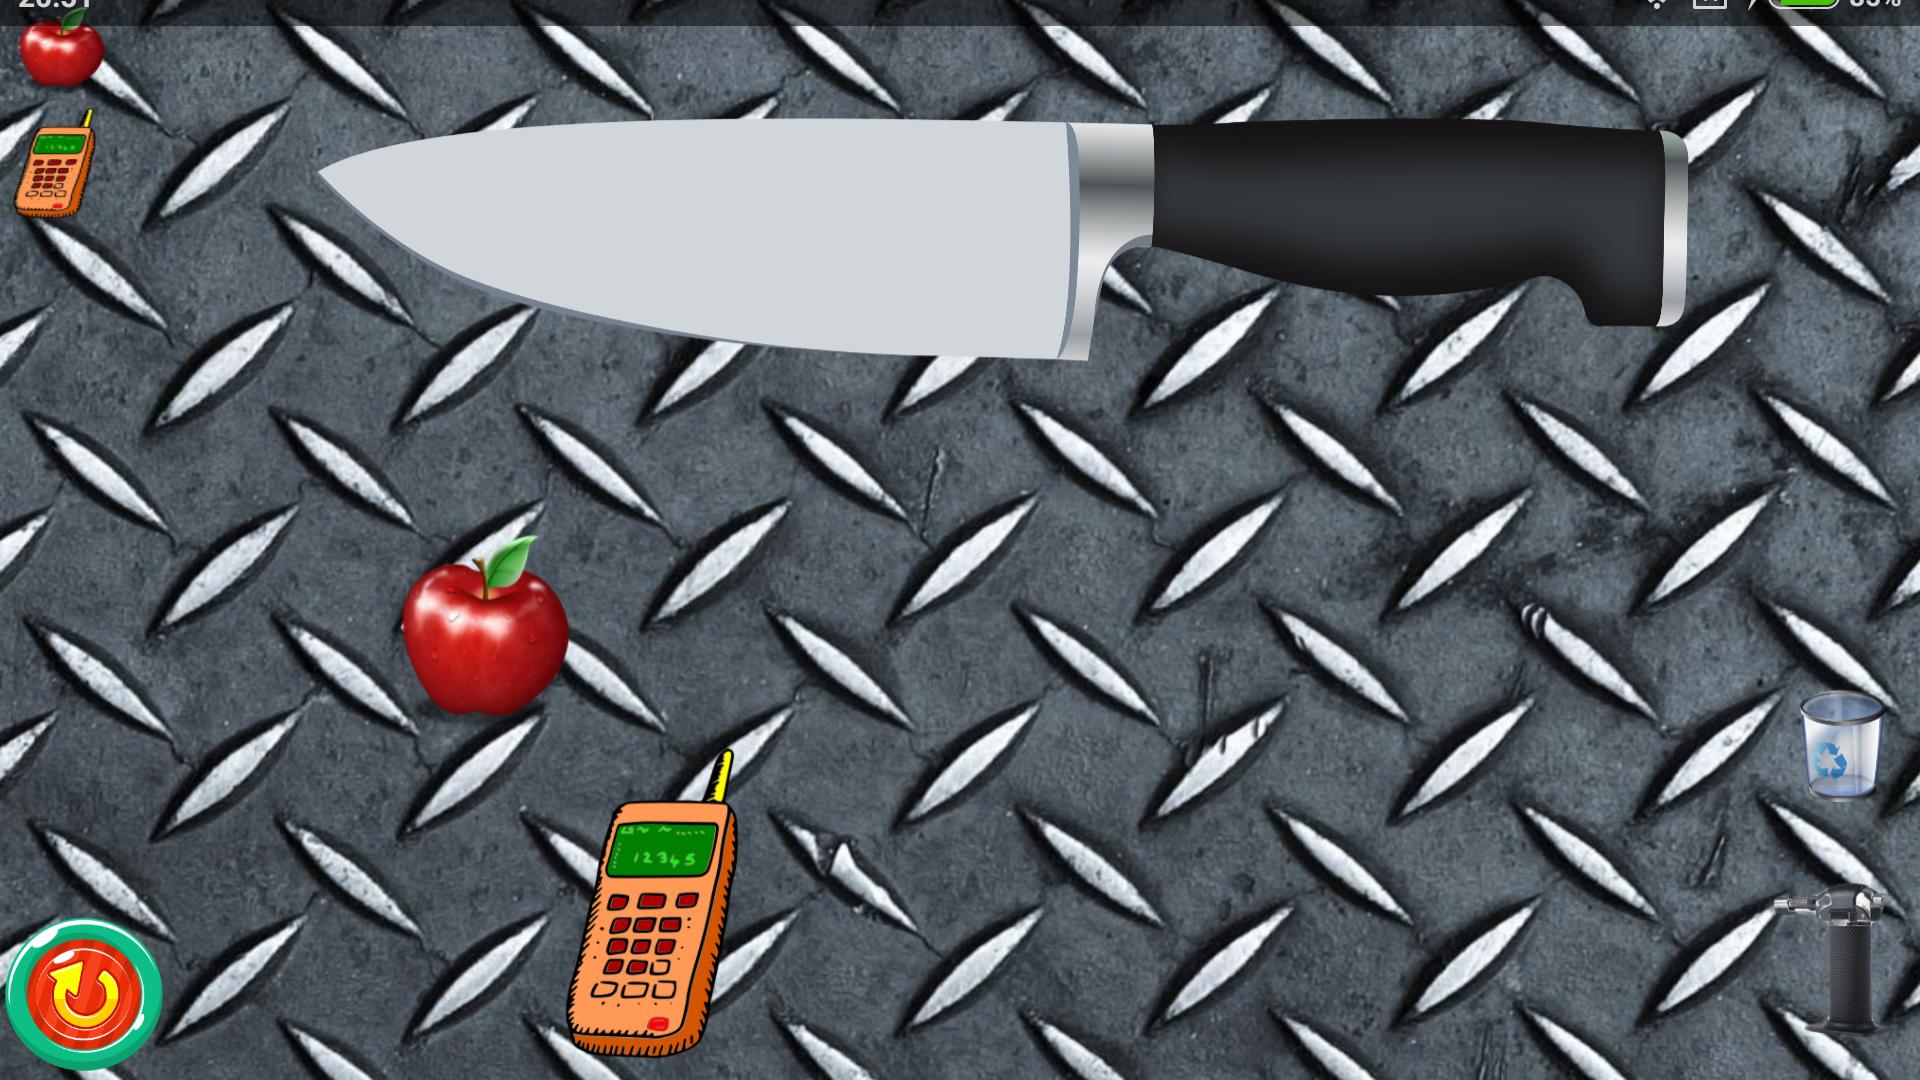 Standknife приватка на андроид